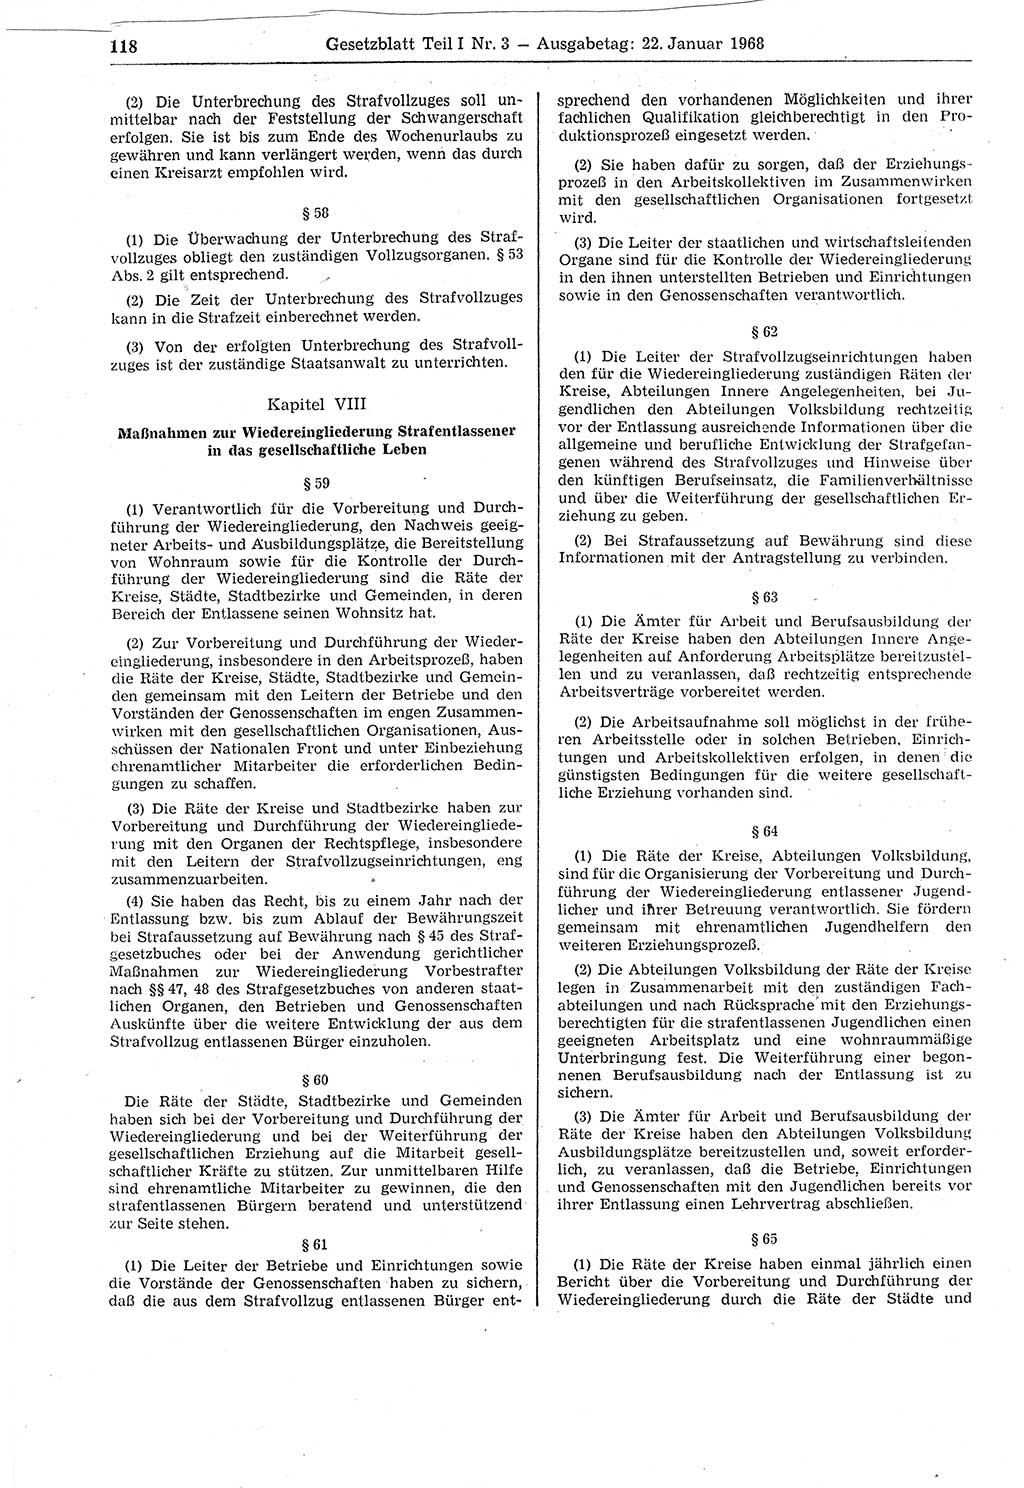 Gesetzblatt (GBl.) der Deutschen Demokratischen Republik (DDR) Teil Ⅰ 1968, Seite 118 (GBl. DDR Ⅰ 1968, S. 118)